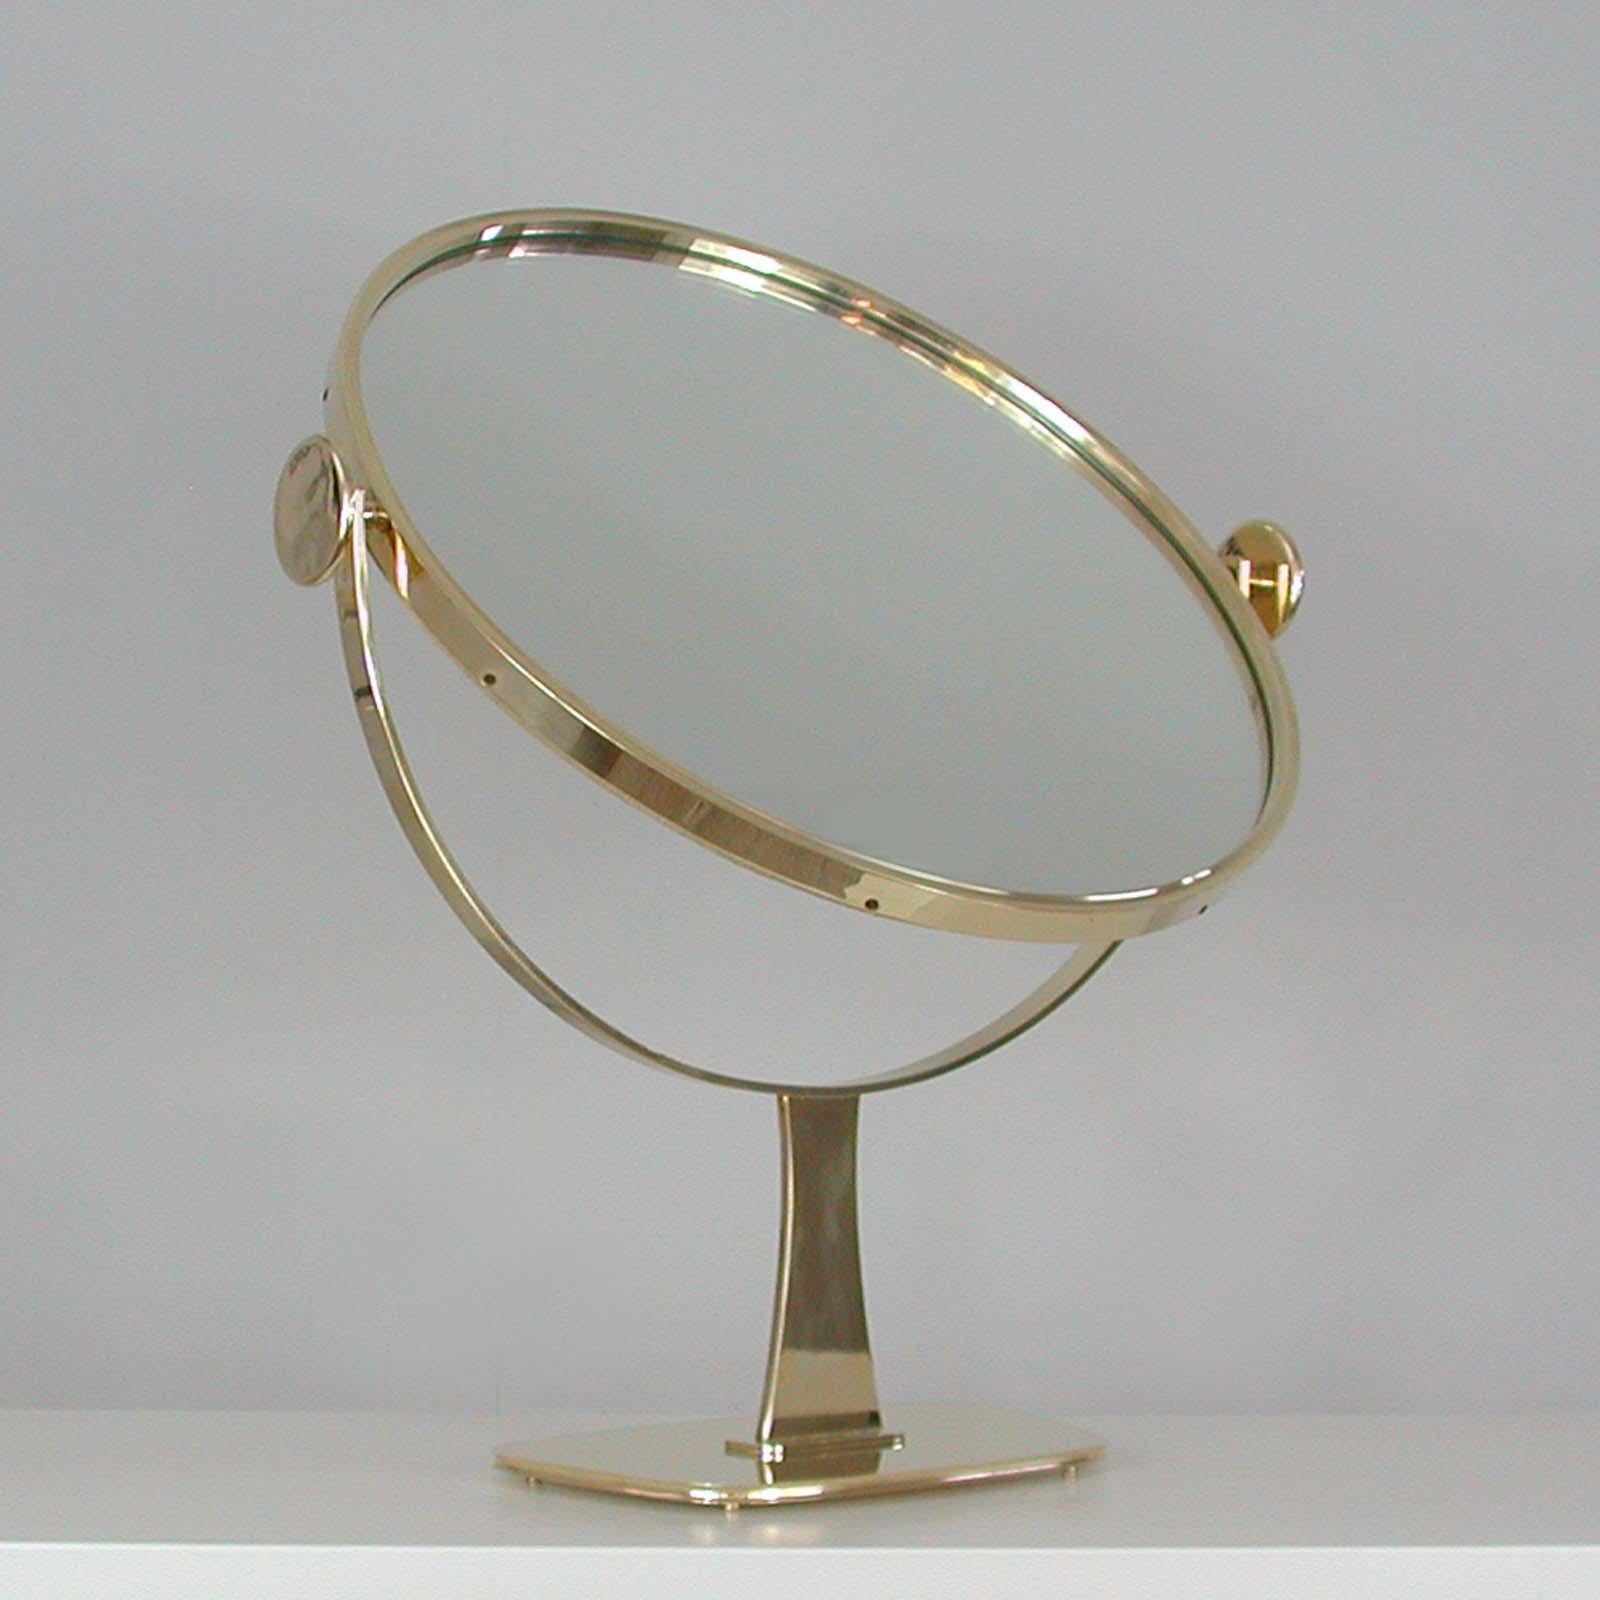 Midcentury German Brass Table Mirror by Vereinigte Werkstätten München, 1960s For Sale 11